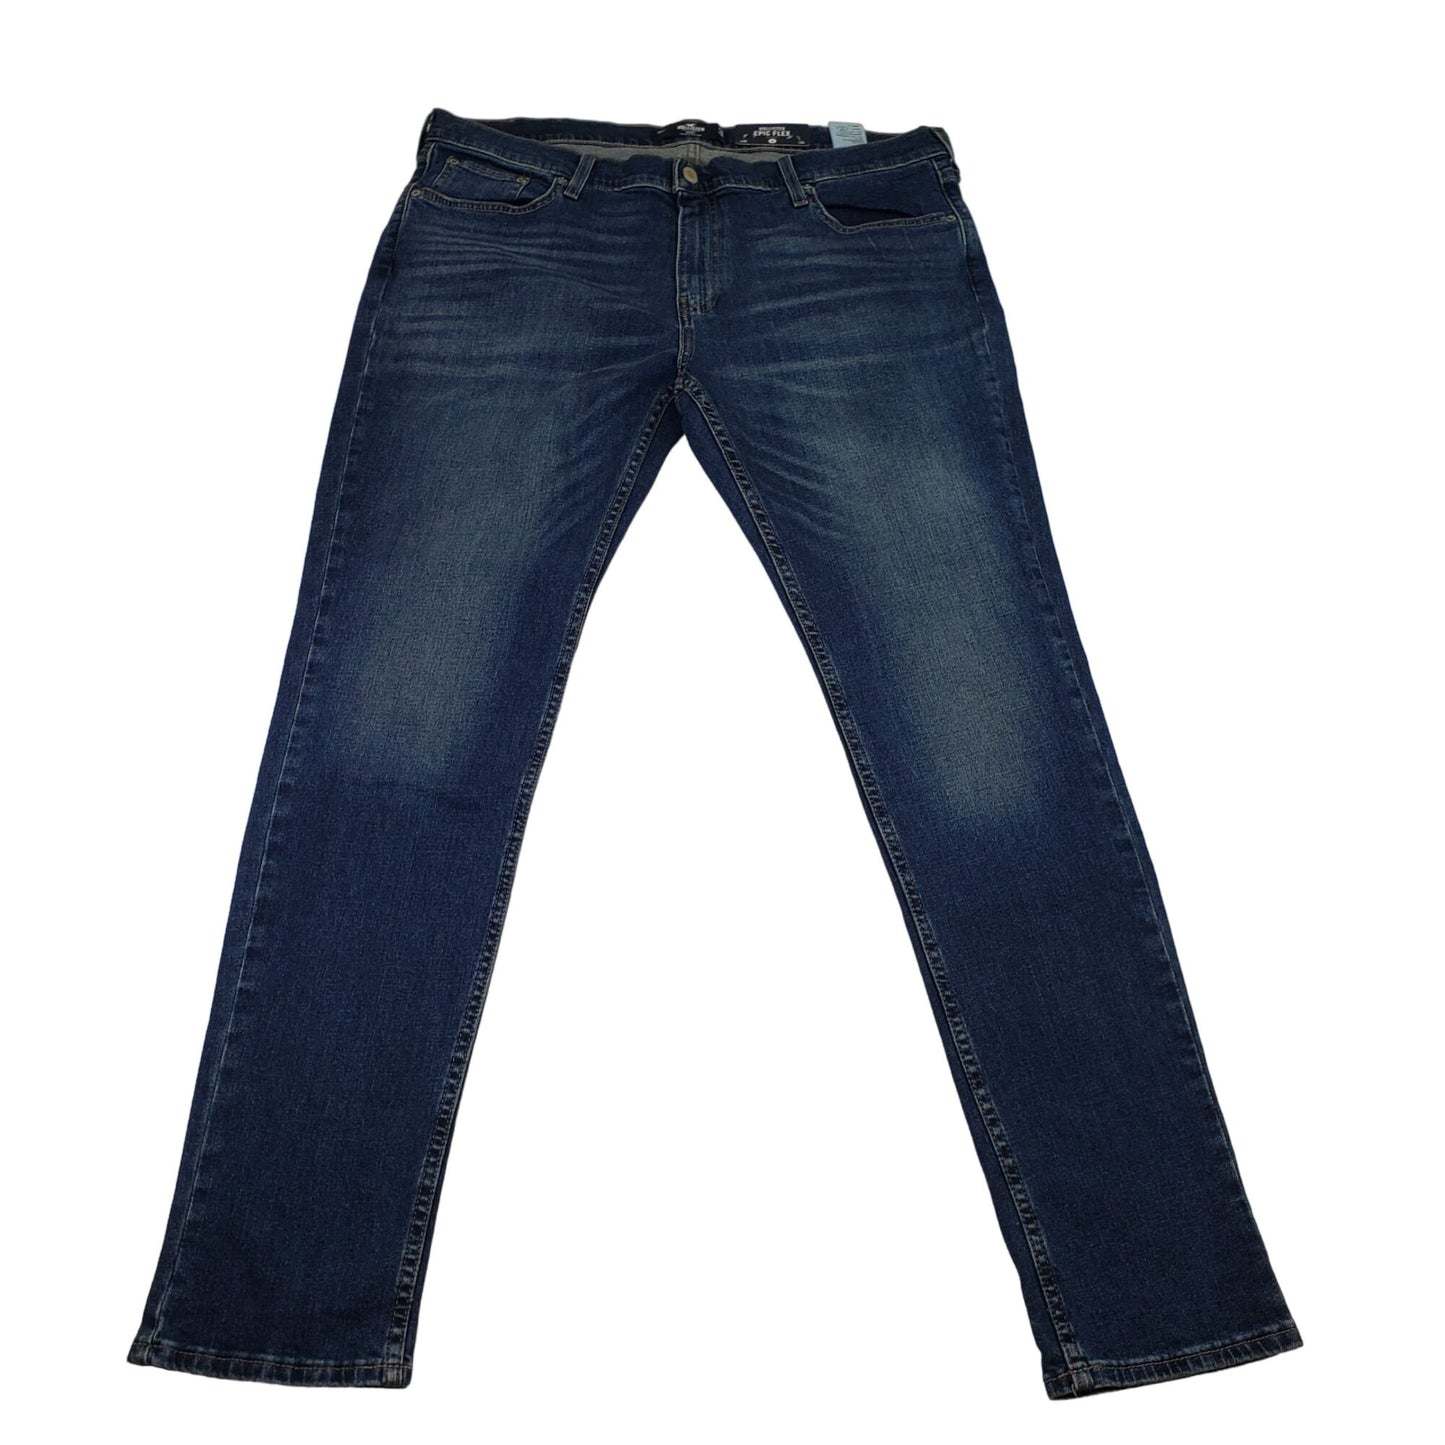 NWT Hollister Epic Flex Skinny Jeans Size 38x34